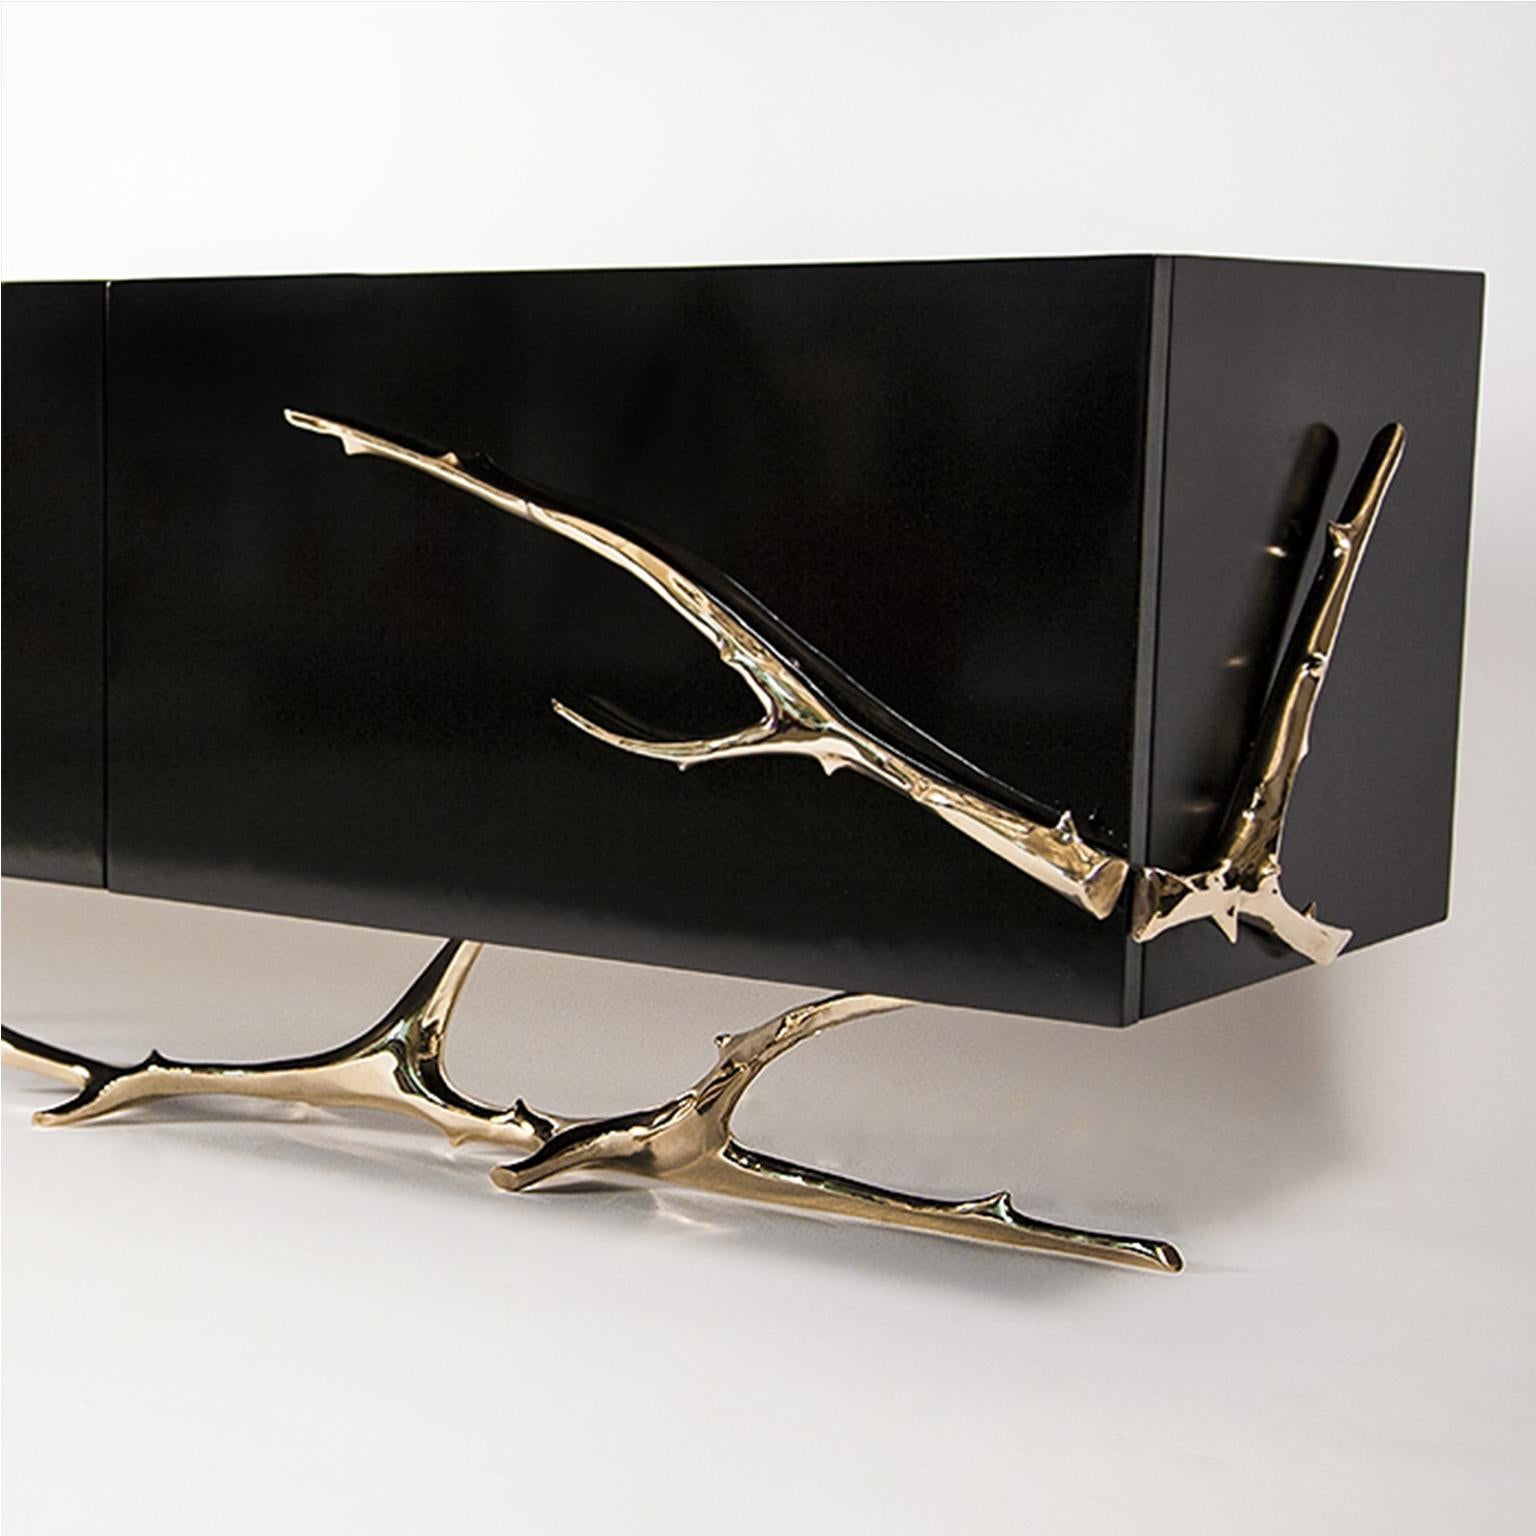 Die Meta Credenza von Barlas Baylar ist ein funktionales Kunstobjekt, das aus einem Gehäuse aus schwarzem Klavierlack besteht, das elegant von Zweigen aus polierter Bronze oder Edelstahl umschlossen wird.  Das Ergebnis ist die dekadente Meta